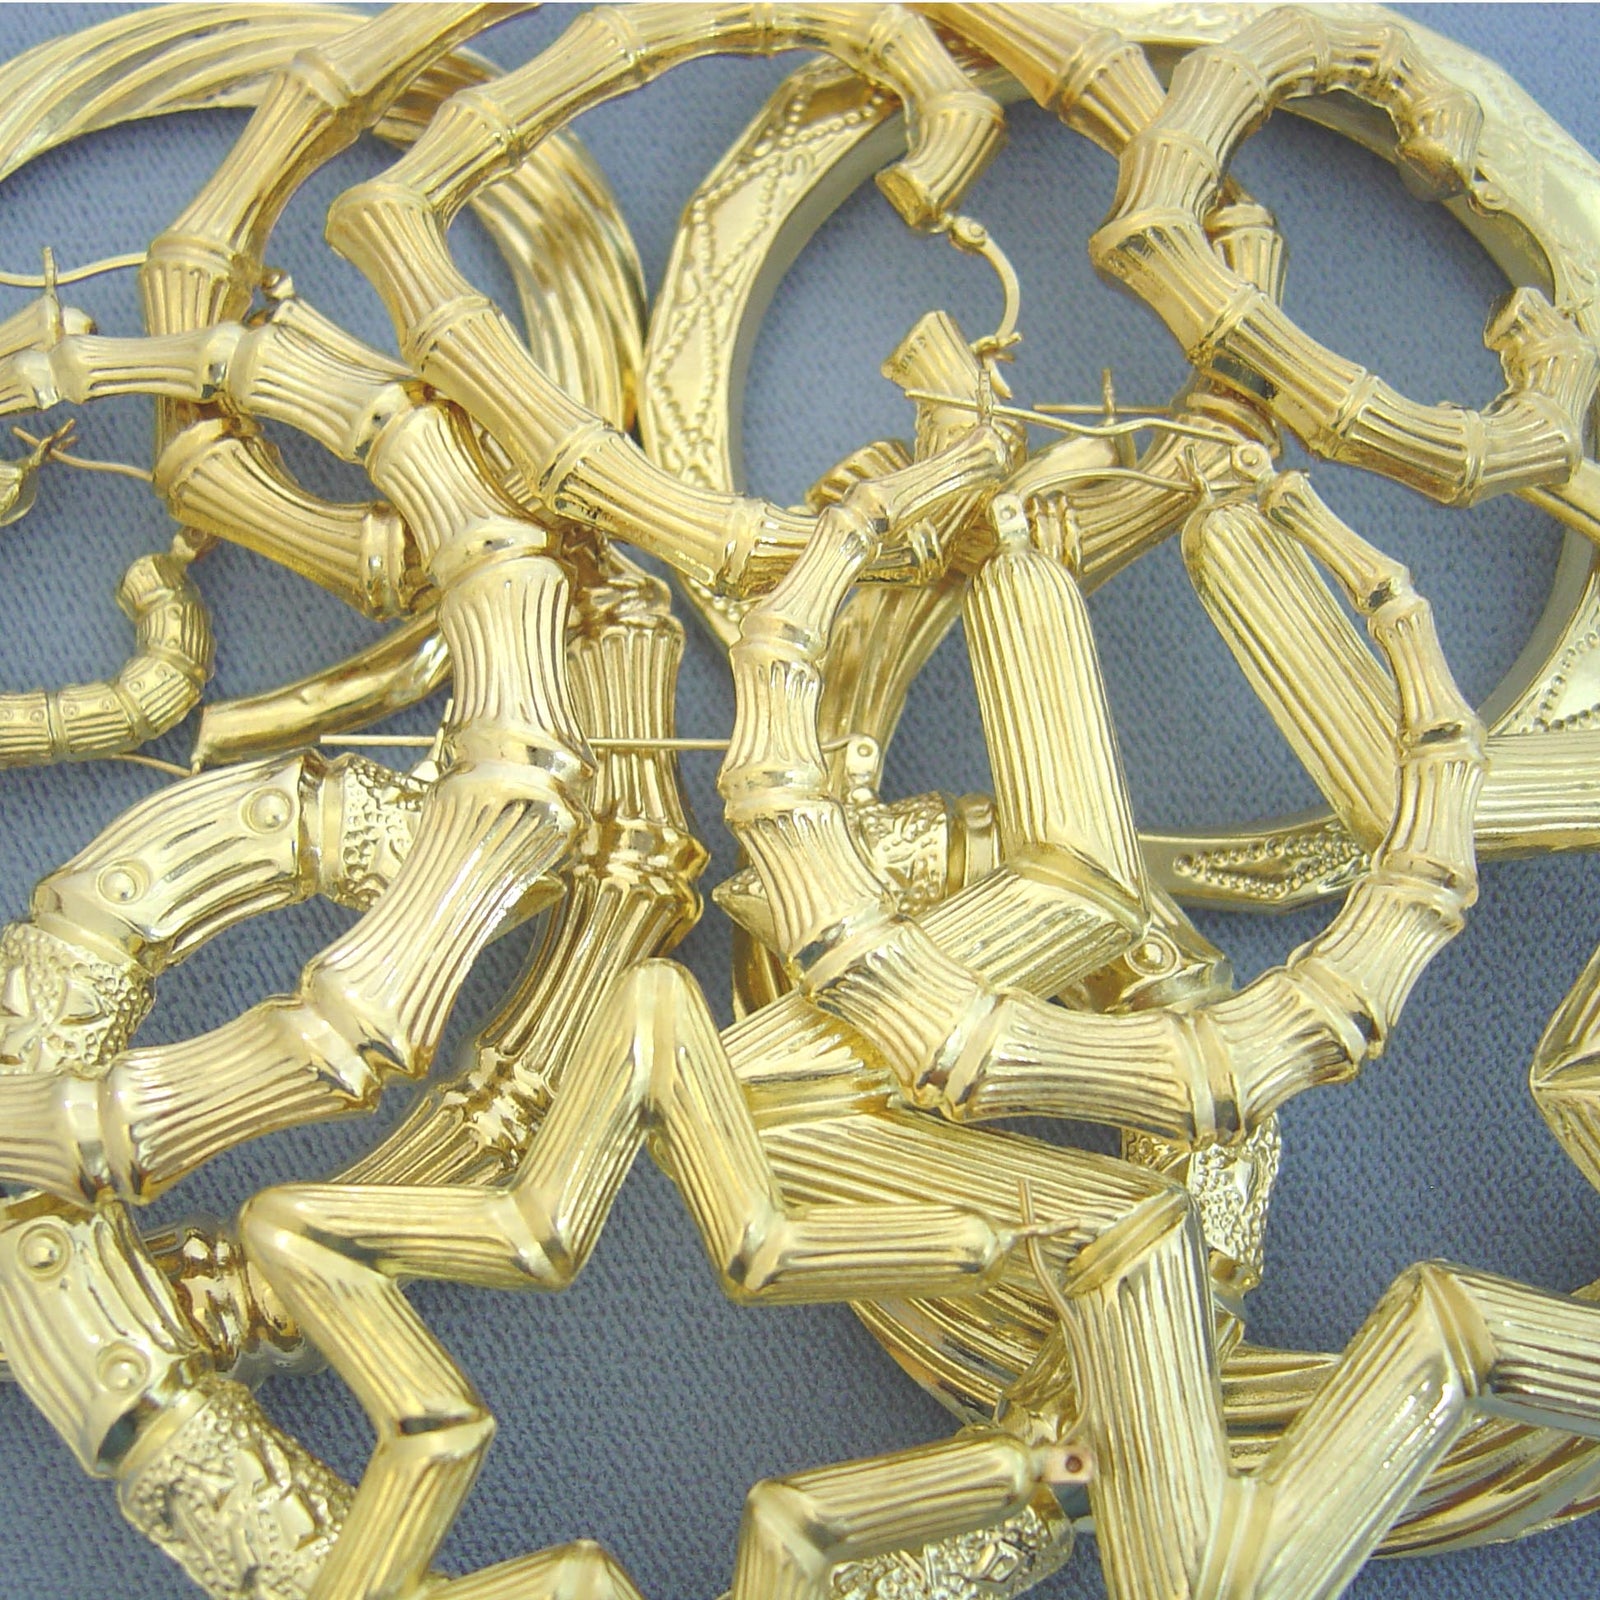 Bamboo Gold Earrings  53 For Sale on 1stDibs  18k gold bamboo earrings bamboo  earrings gold real gold bamboo earrings